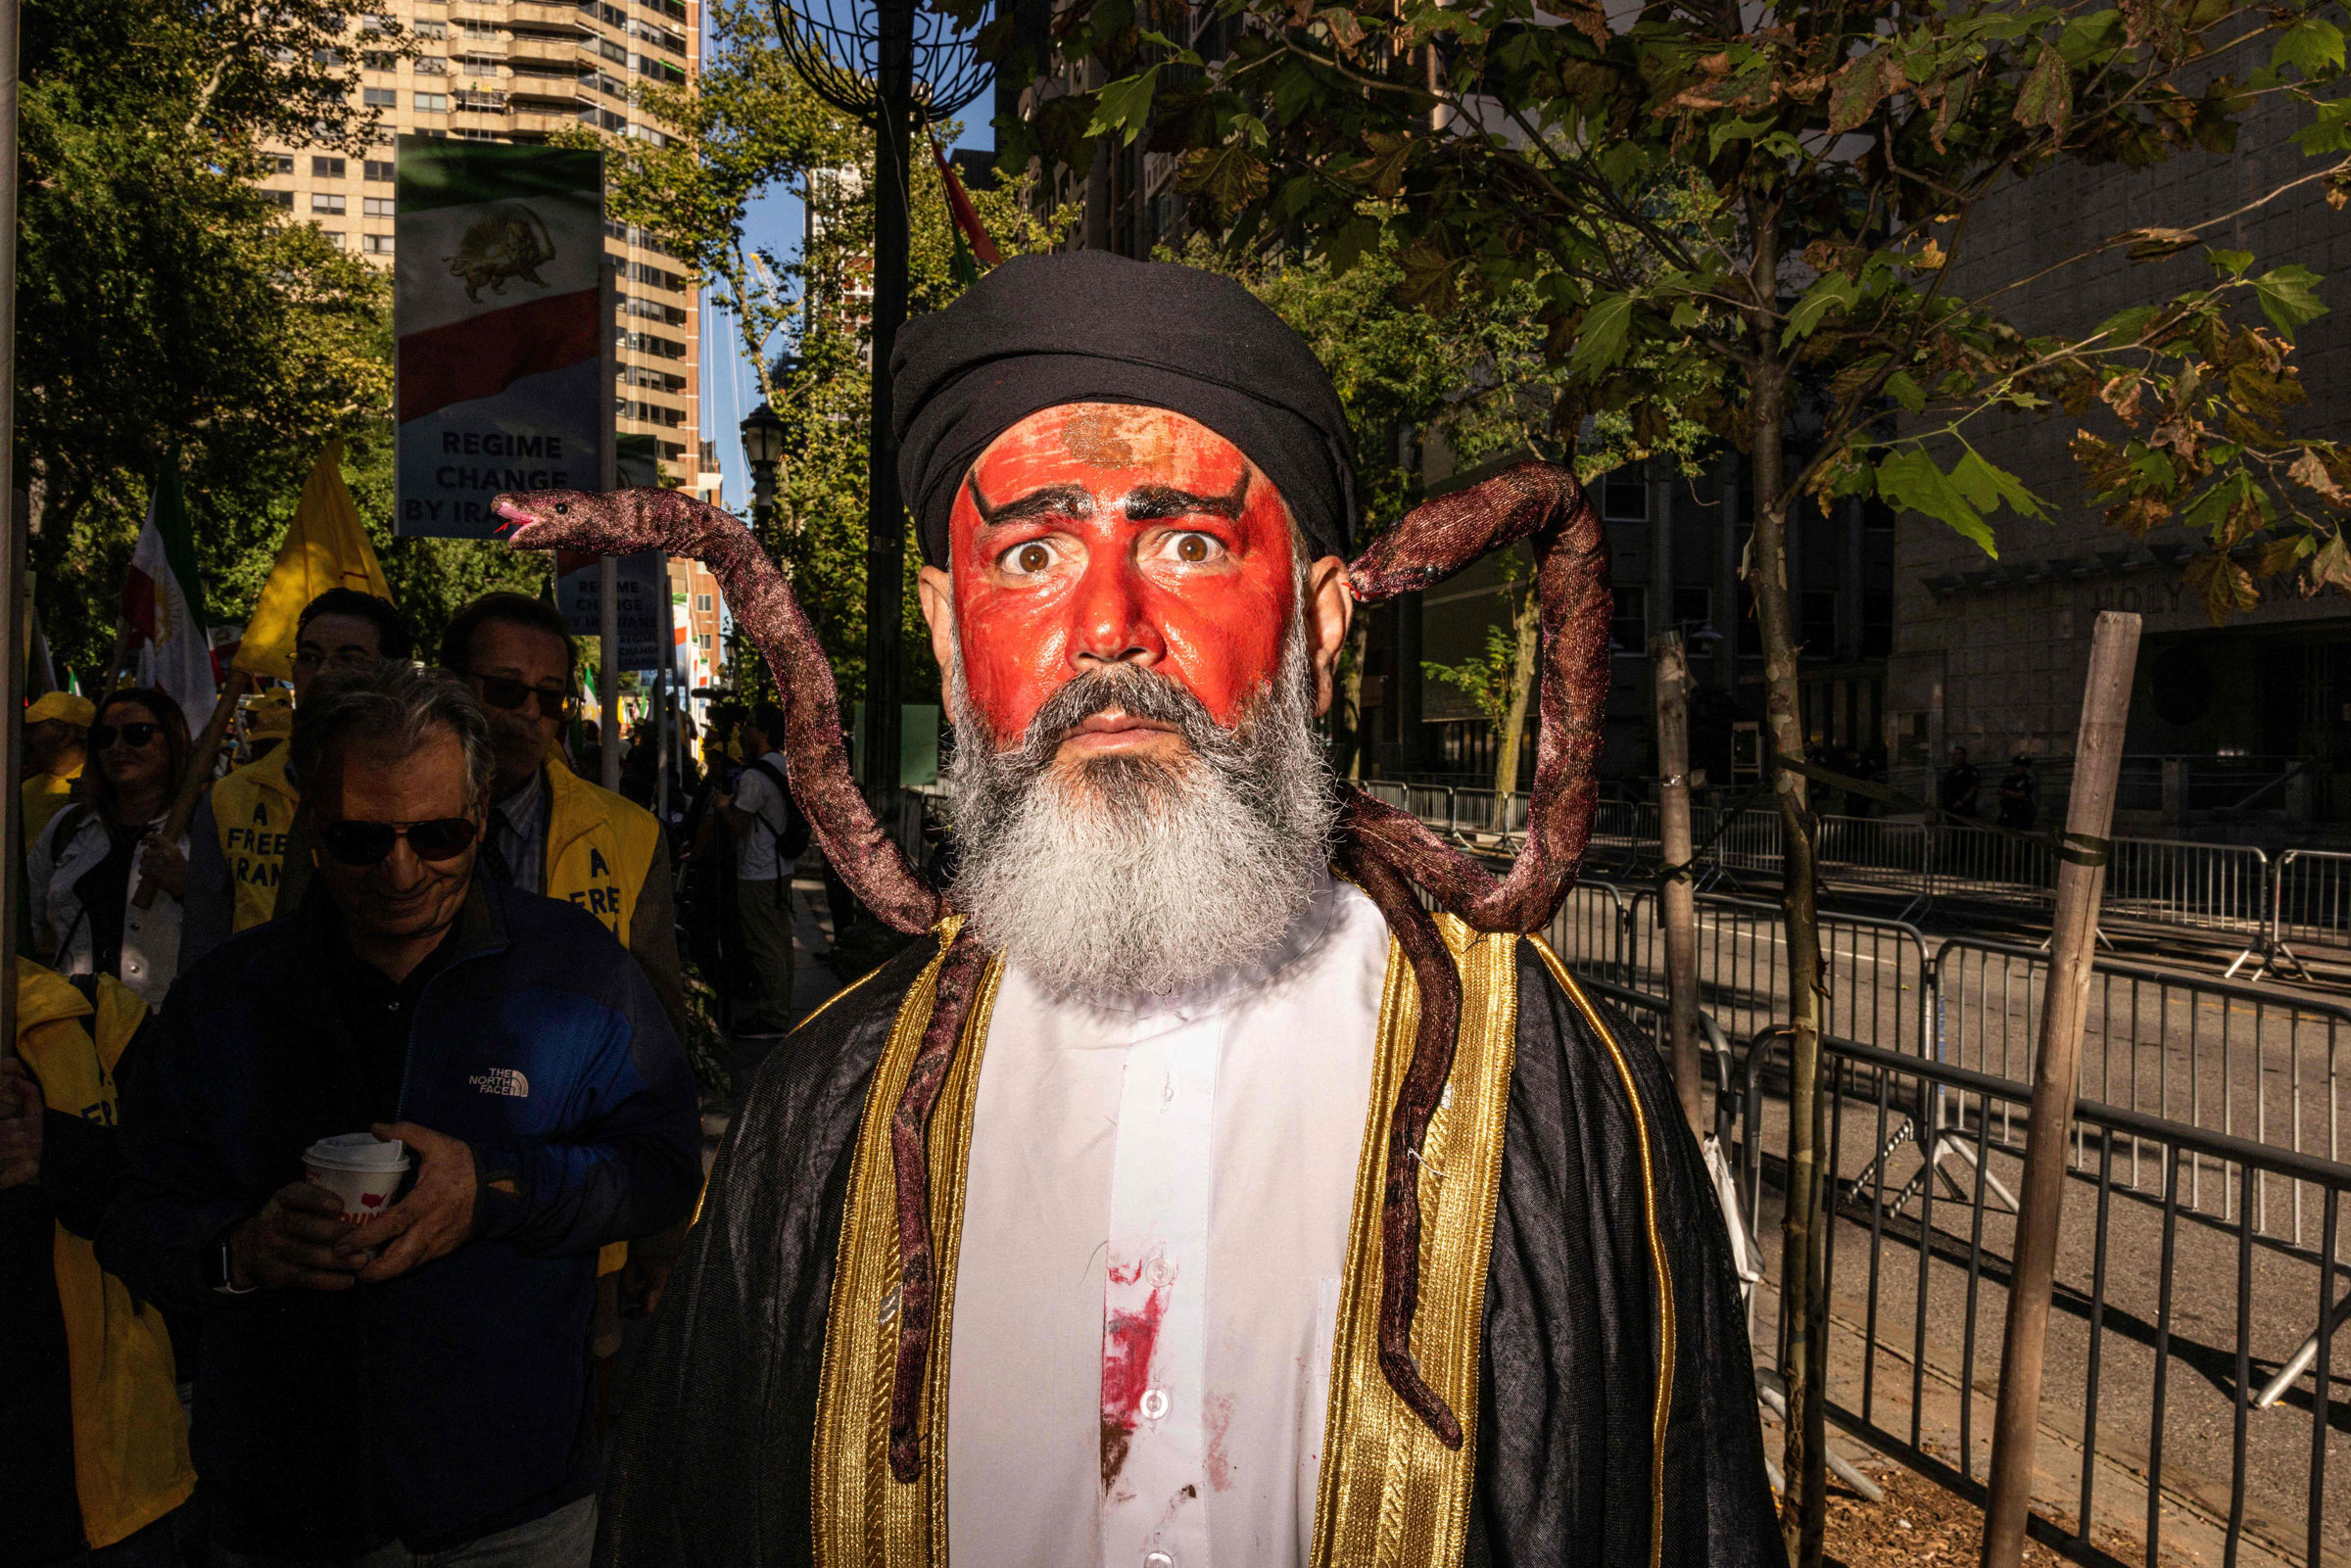 <b>New York, NY </b>İran Cumhurbaşkanı Ebrahim Rasi gibi giyinmiş, omuzlarında yılanlar olan kanlar içinde bir kişi, 21 Eylül 2022’de New York’ta düzenlenen bir miting sırasında İran Cumhurbaşkanı Ebrahim Raisi’yi protesto eden bir protestoya katıldı, Birleşmiş Milletler Genel Kurulu’nun 77. oturumu sırasında.  (Alex Kent—AFP/Getty Images)” class=”fix-layout-shift”/><br />
                                </source></source></source></source></source></picture>
</figure>
<div class=